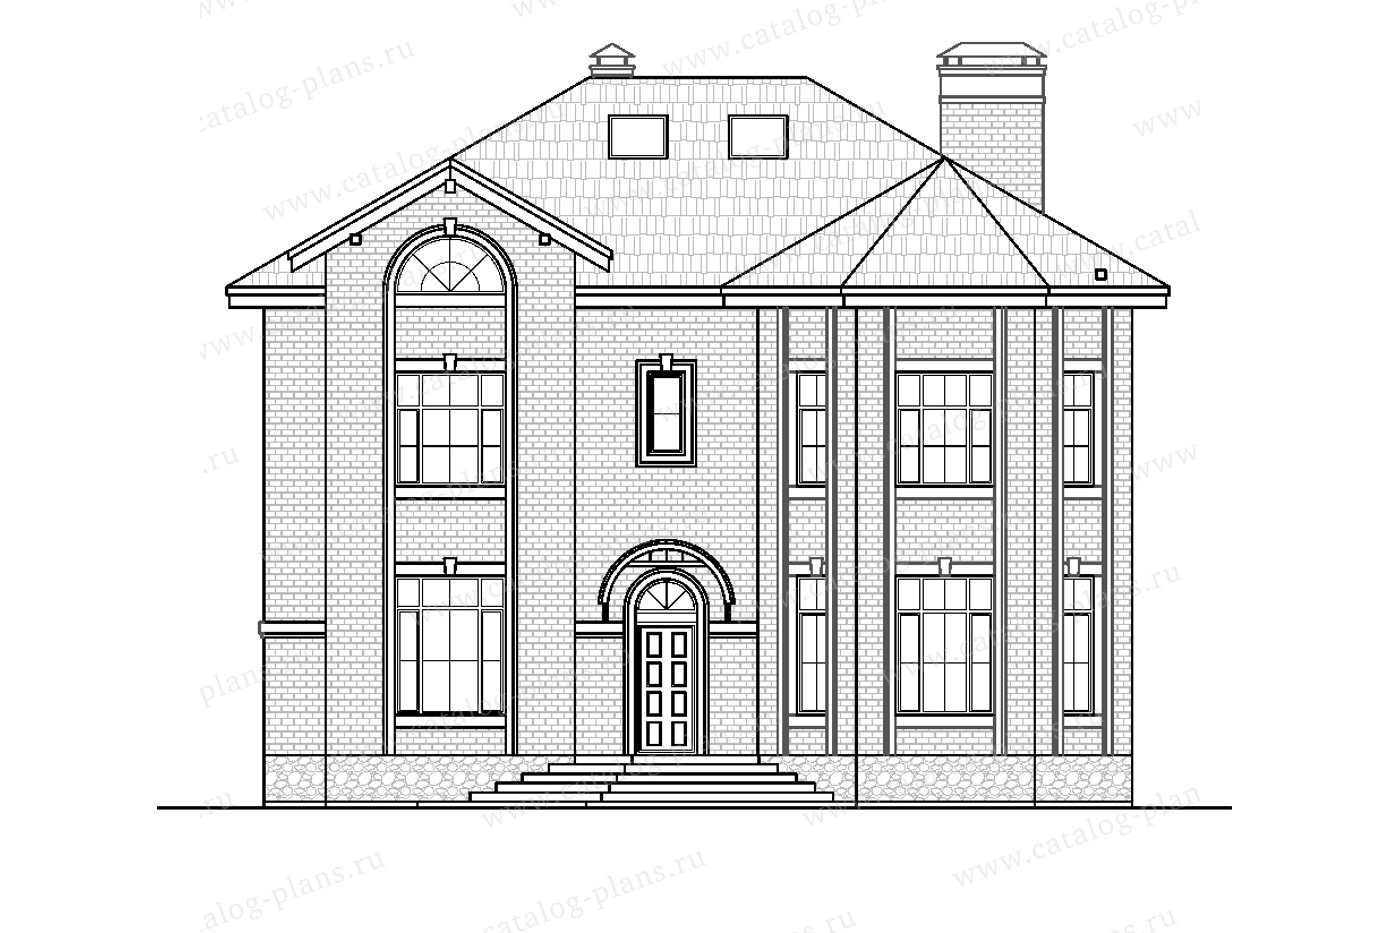 Проект 40-11BAGL, жилой дом, материал - газобетонные блоки 400, количество этажей - 3, архитектурный стиль - европейский, фундамент - монолитная ж/б плита